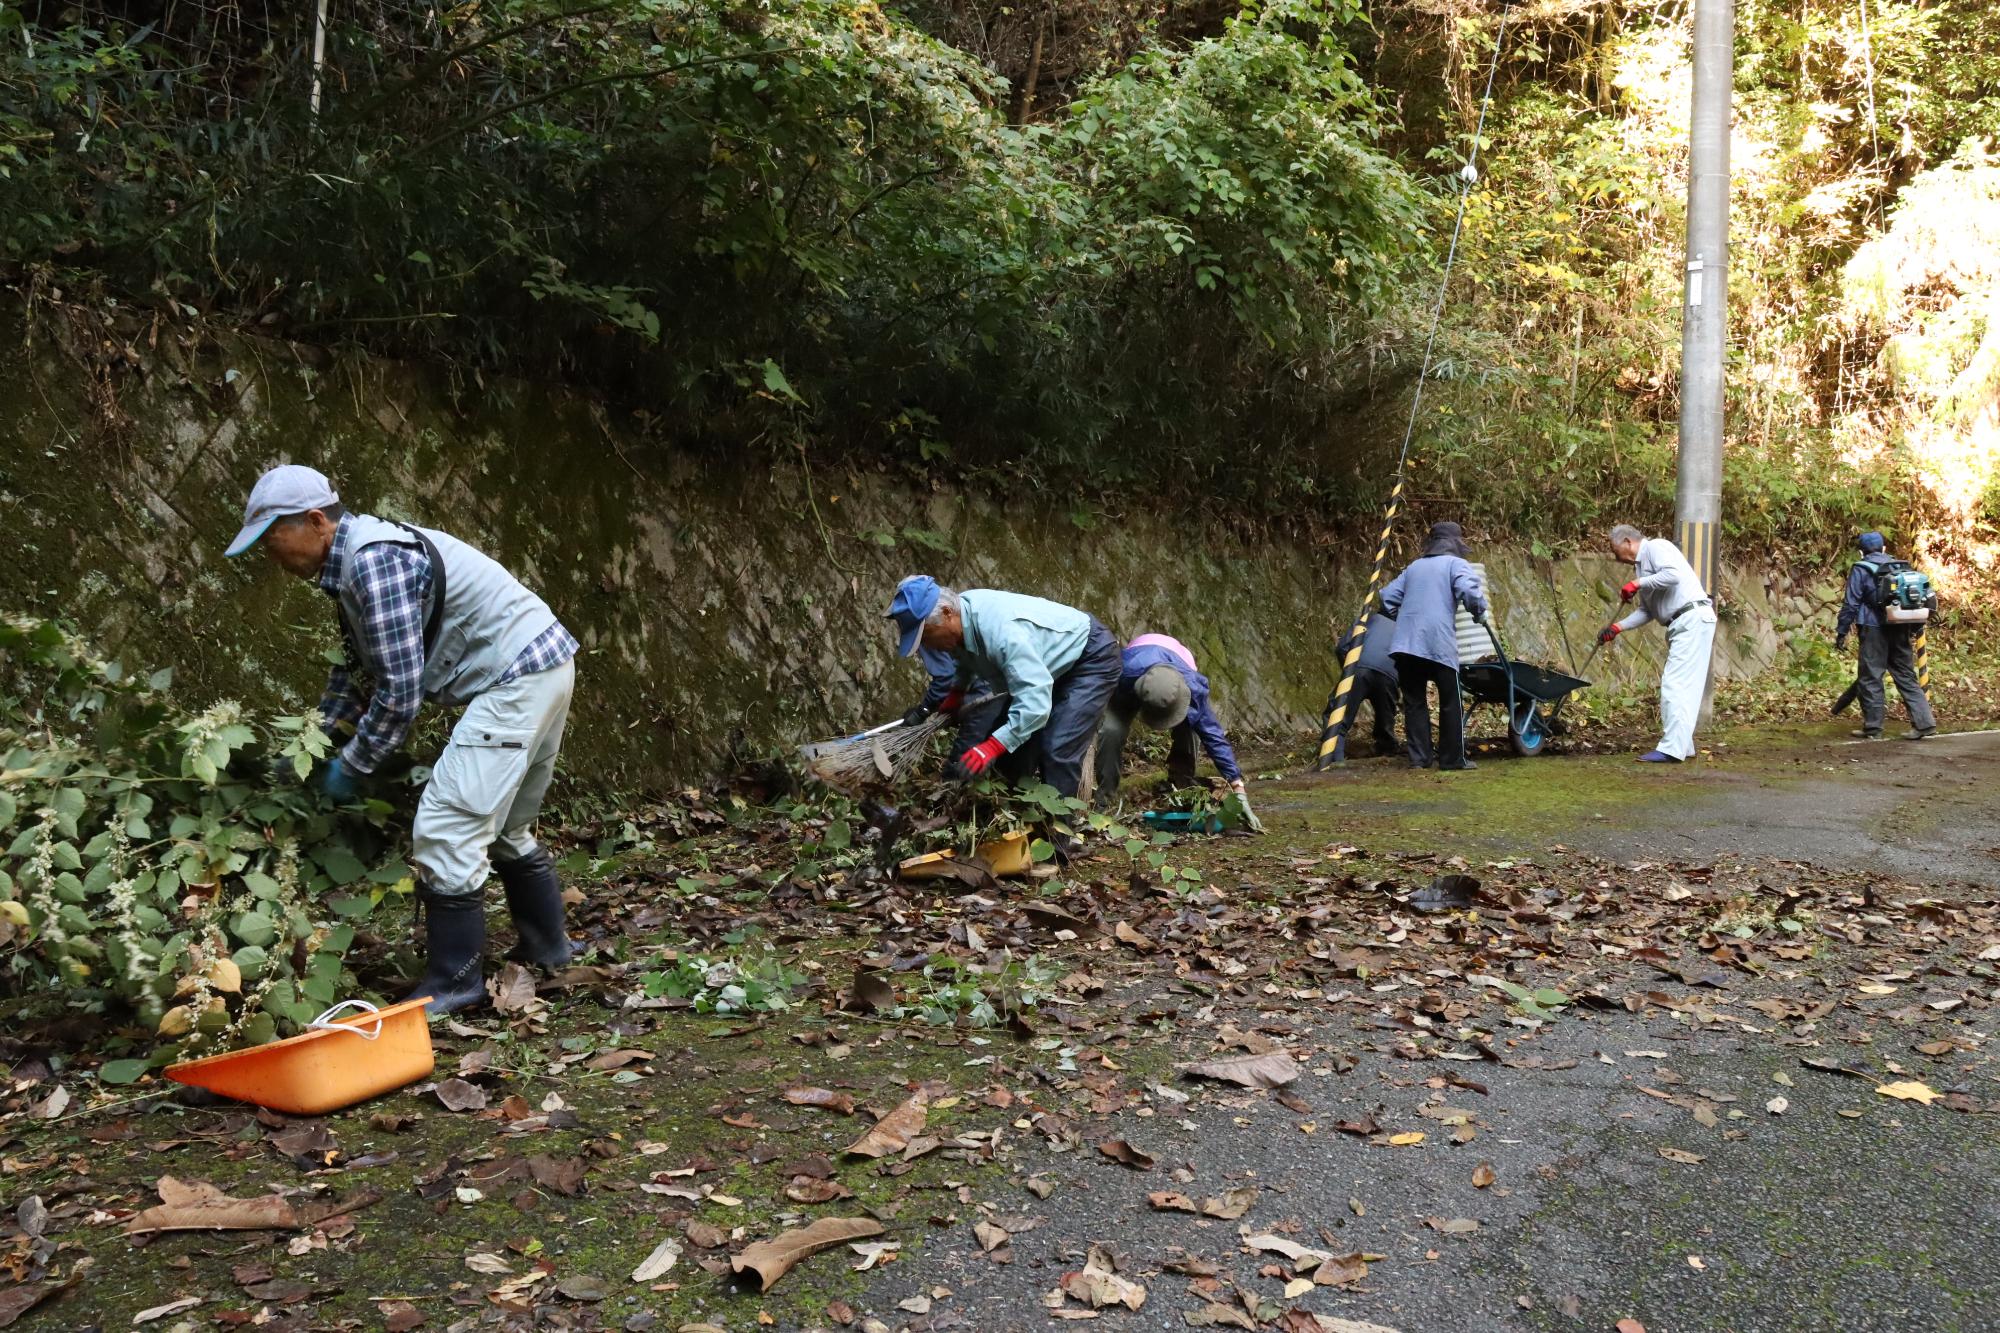 シルバー人材センターの会員が道路上の落ち葉や木の枝を回収している写真